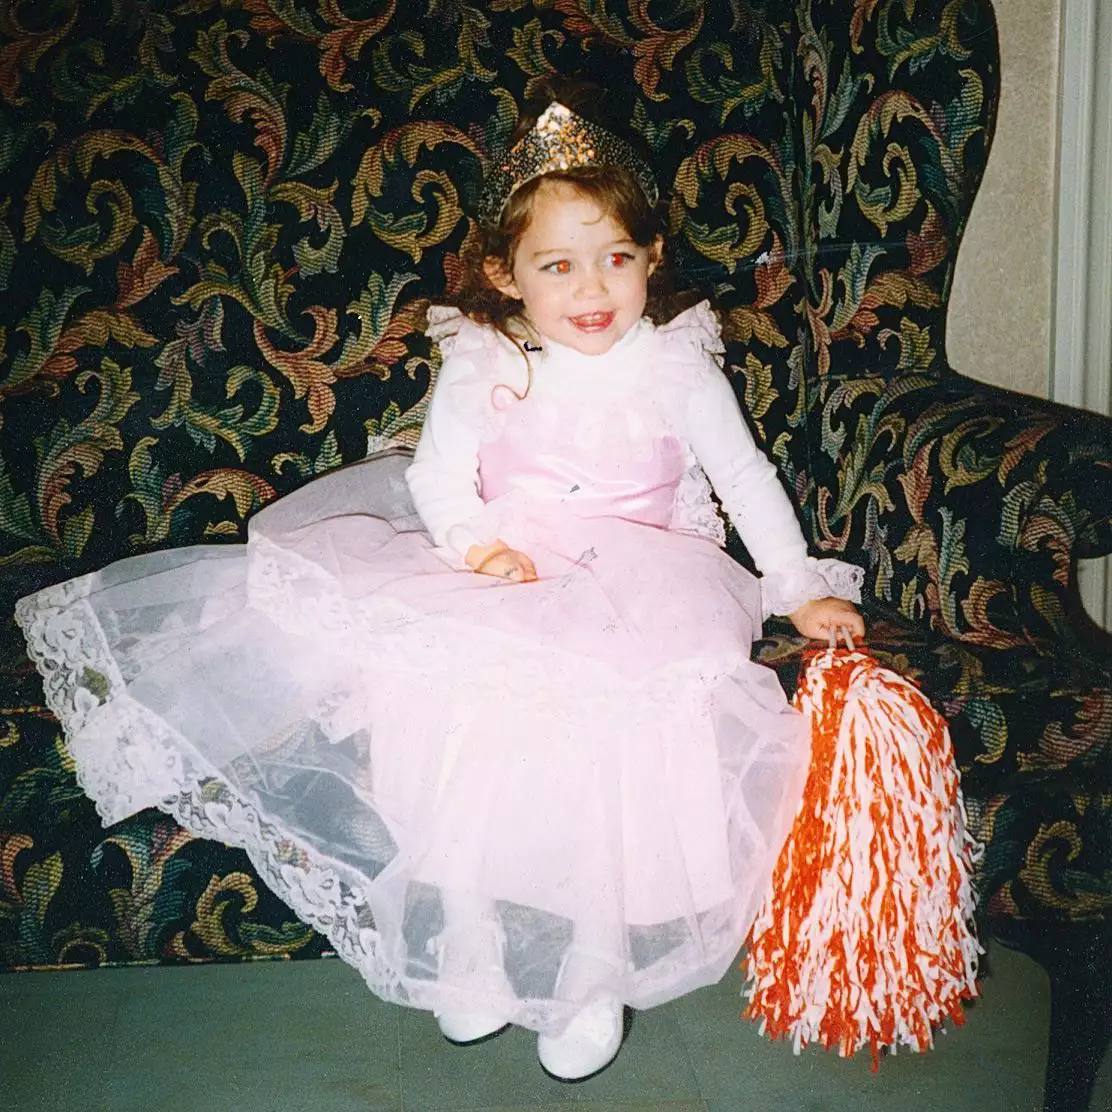 Δείτε τις πιο γλυκές φωτογραφίες της Μάιλι Σάιρους από την παιδική της ηλικία